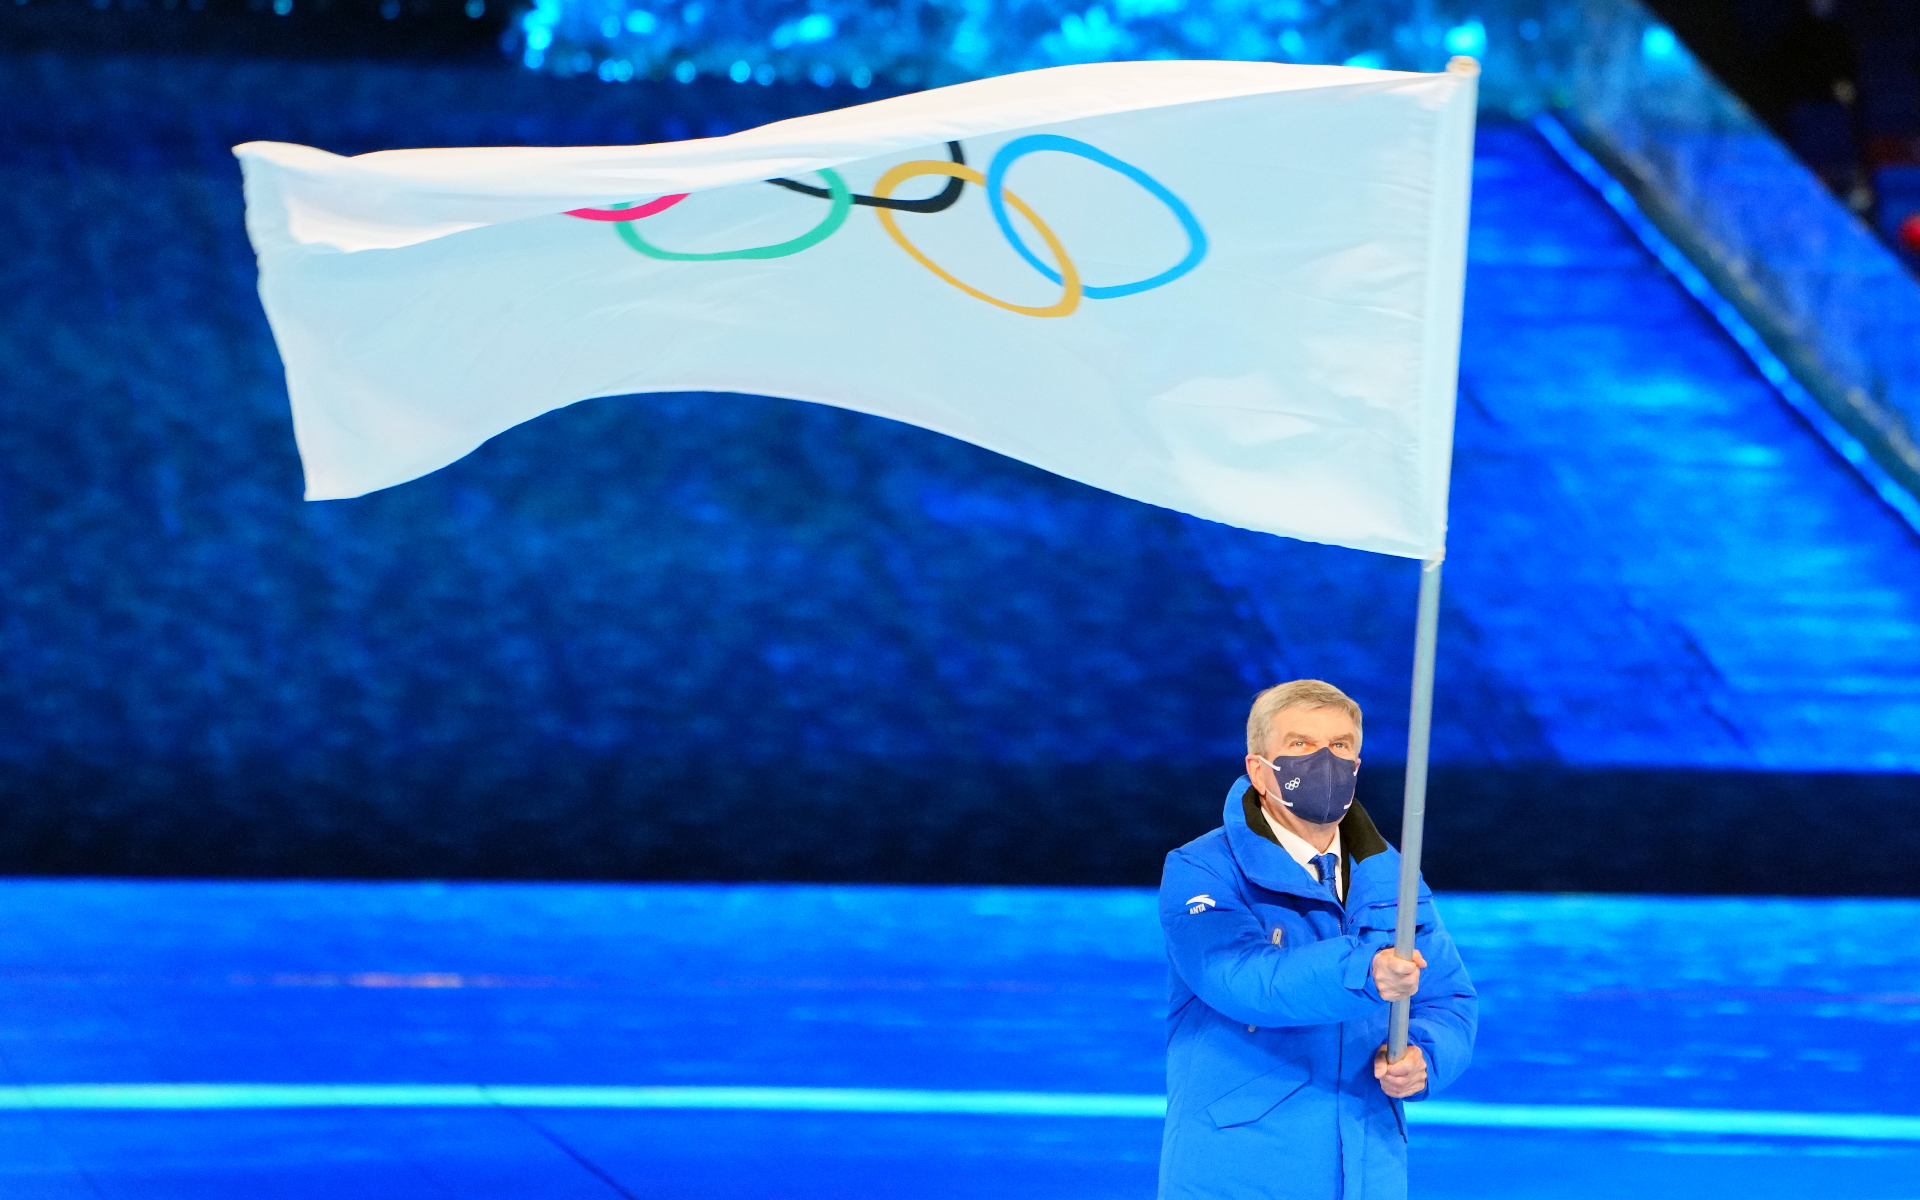 МОК включил восемь новых дисциплин в программу Олимпиады 2026 года